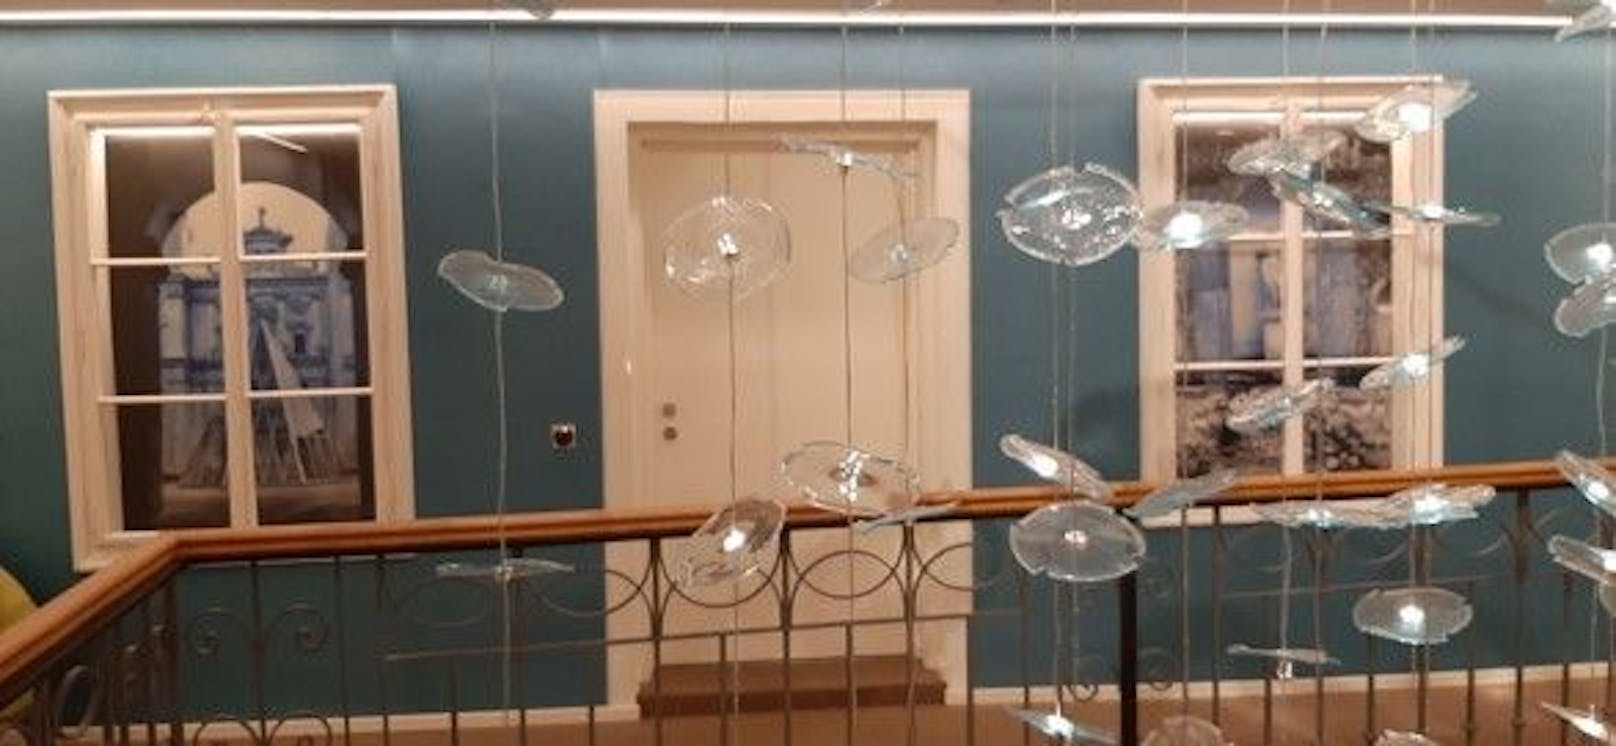 Alle Leuchten und Glaskunstwerke, die im Haus zu sehen sind, wurden exklusiv für das Hotel Stein produziert.